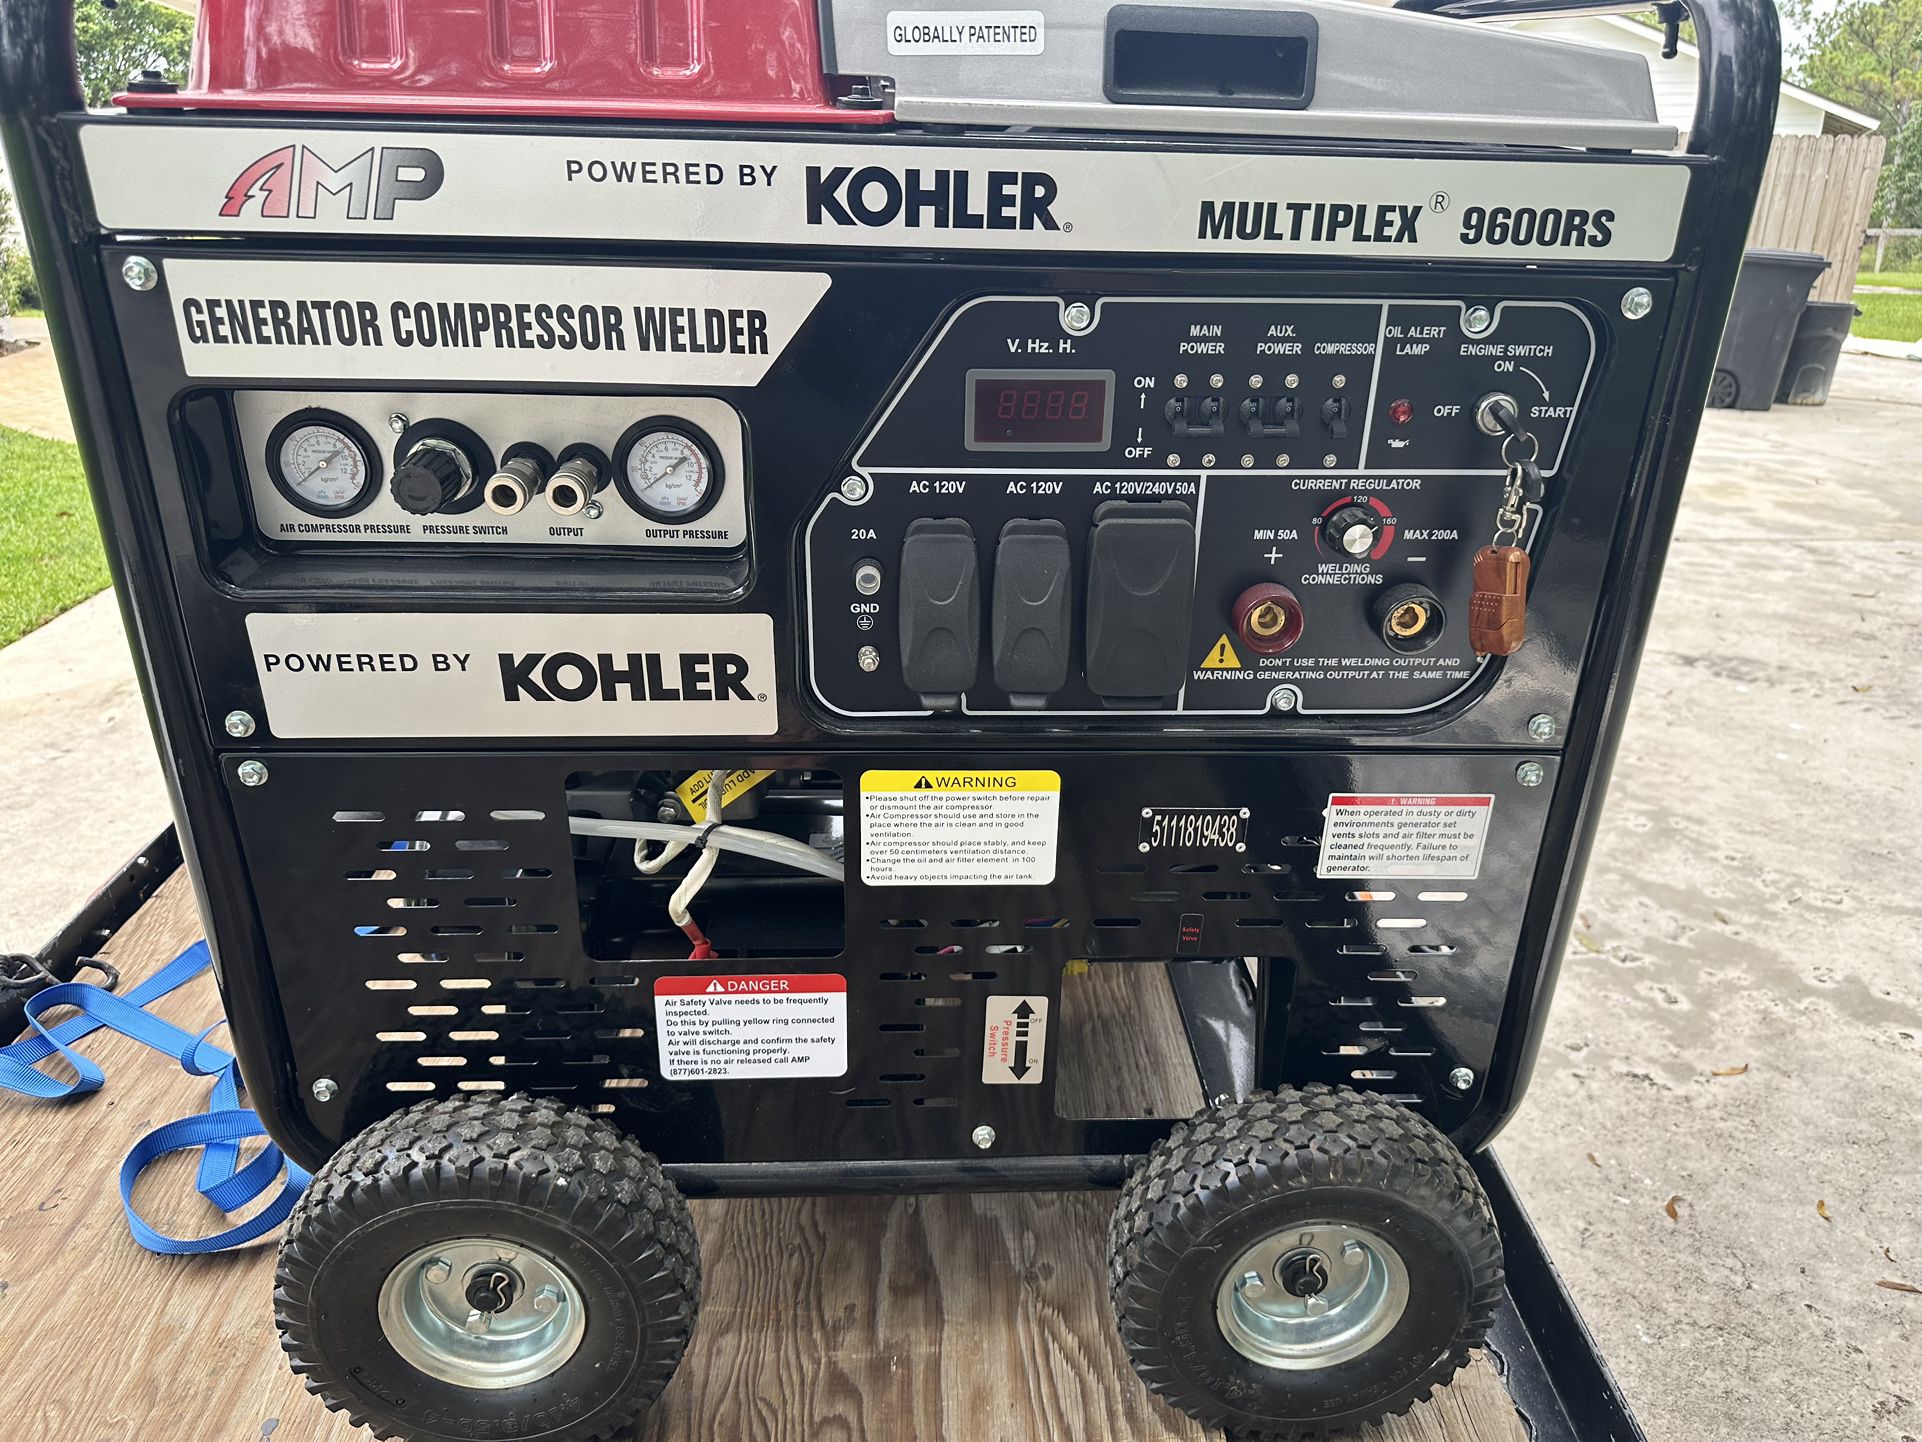 Generator Compressor Welder 3-in-1